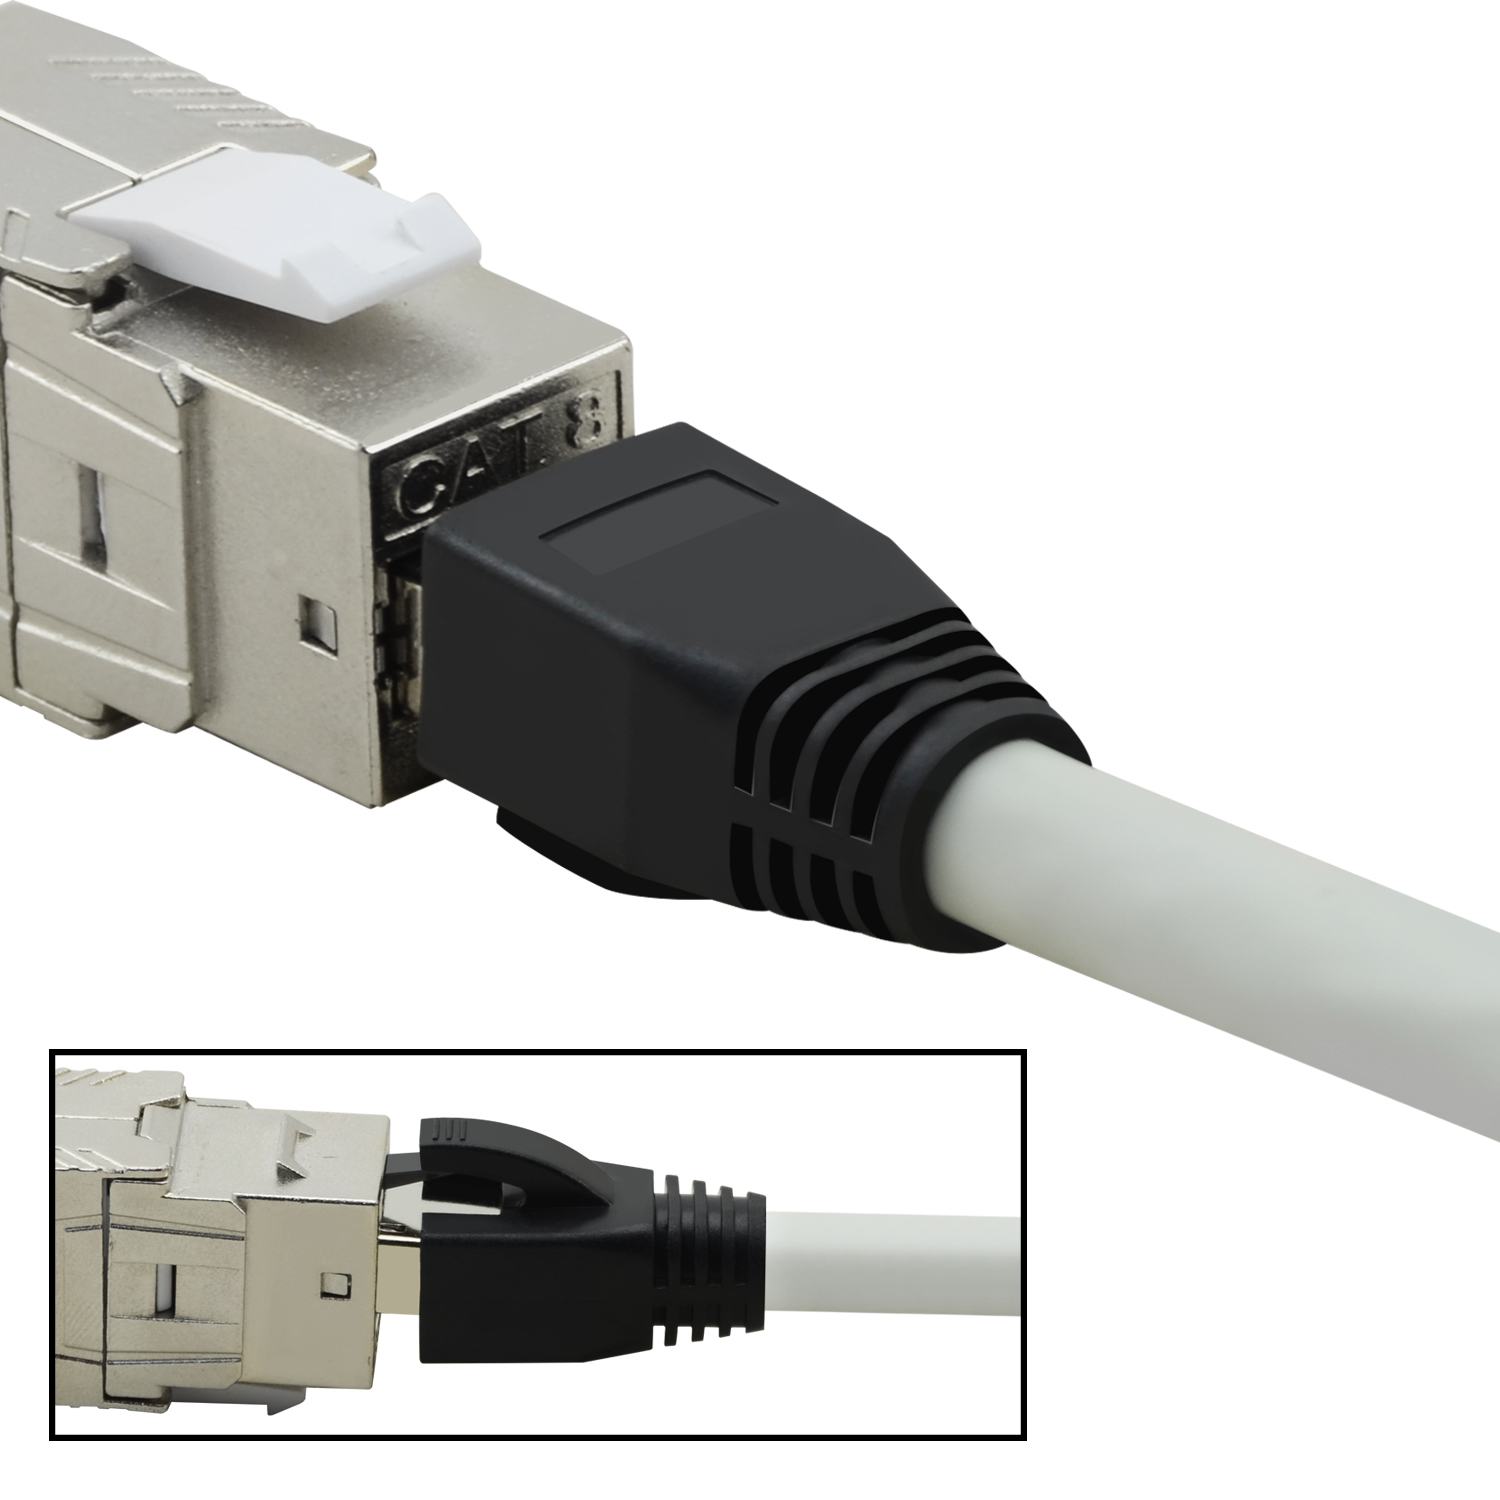 m Netzwerkkabel / 1,5 TPFNET Patchkabel 40 S/FTP GBit, grau, Netzwerkkabel, 1,5m